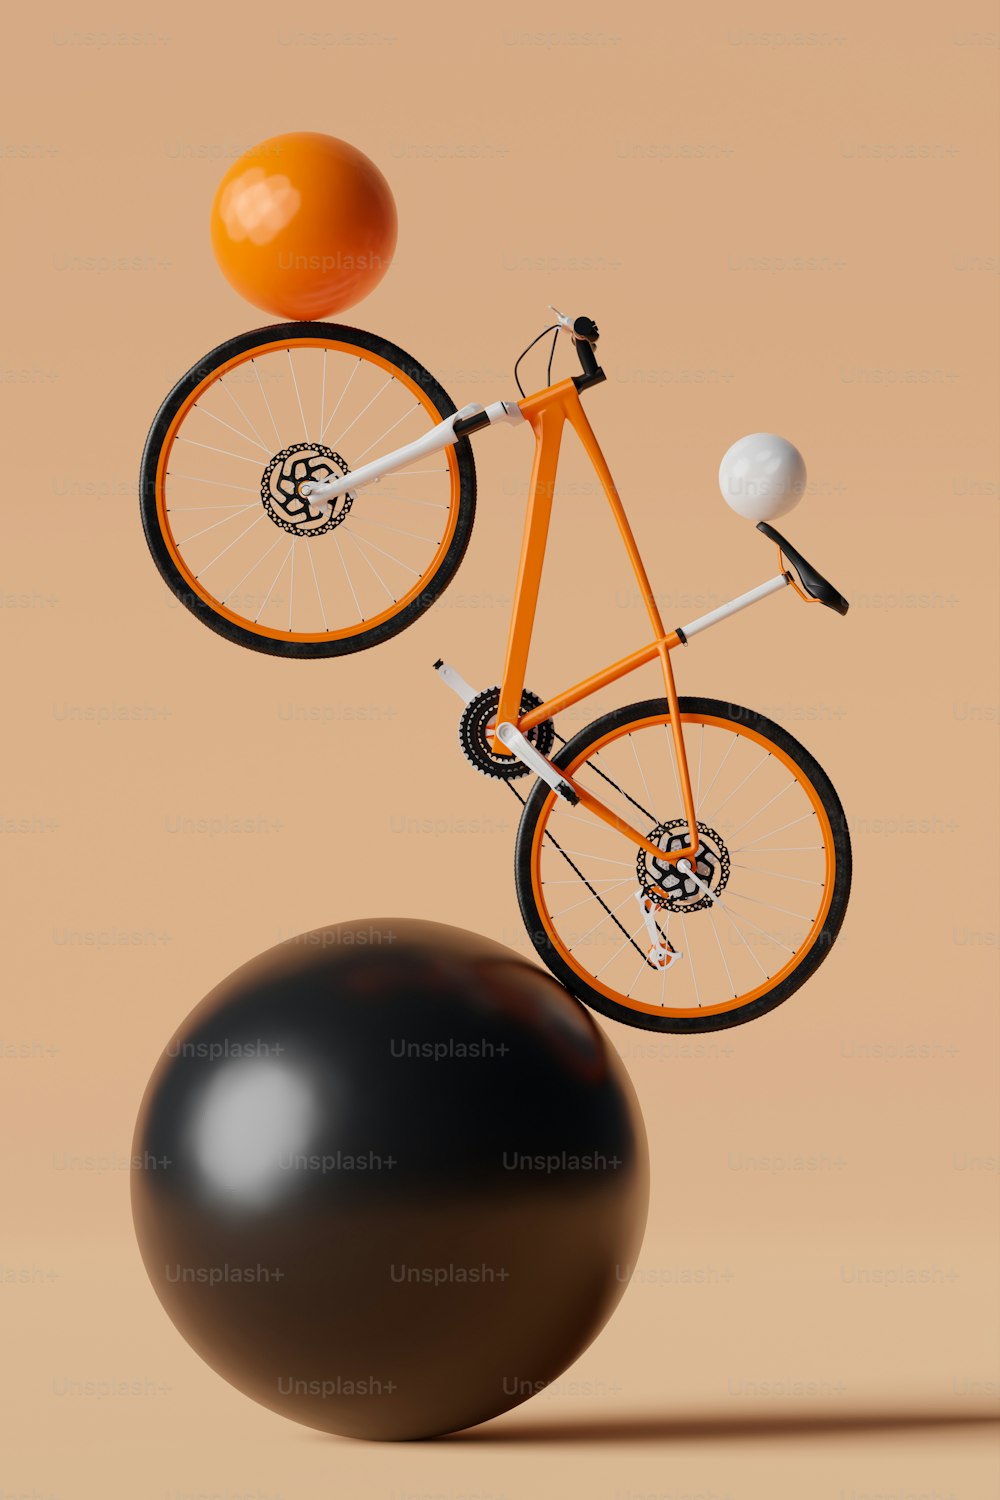 Un vélo orange en équilibre sur une boule noire